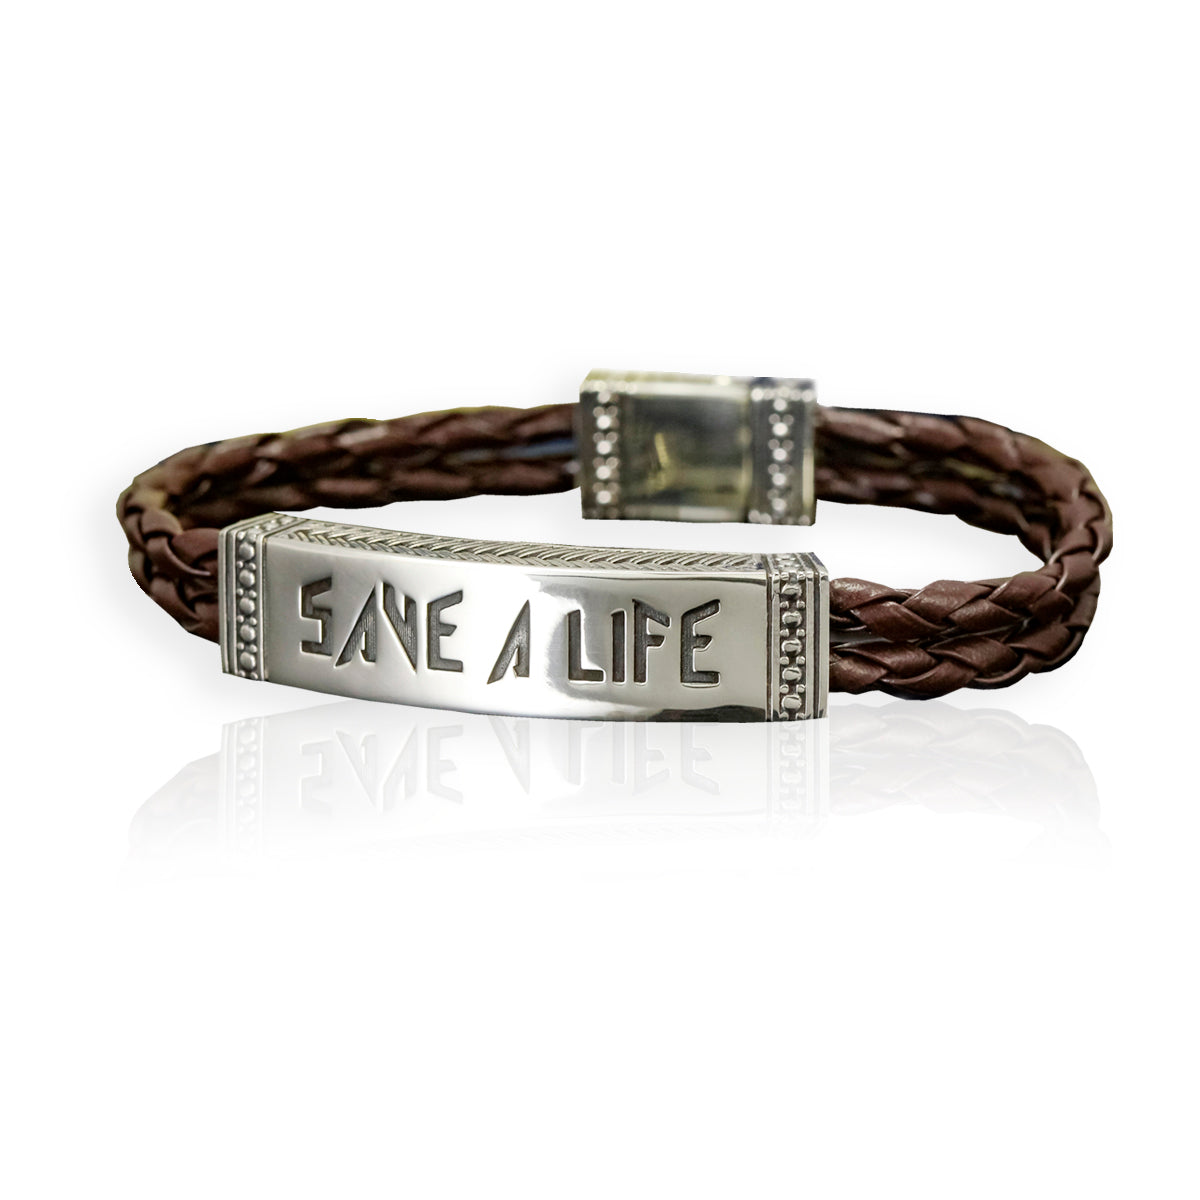 Save a Life Bracelet